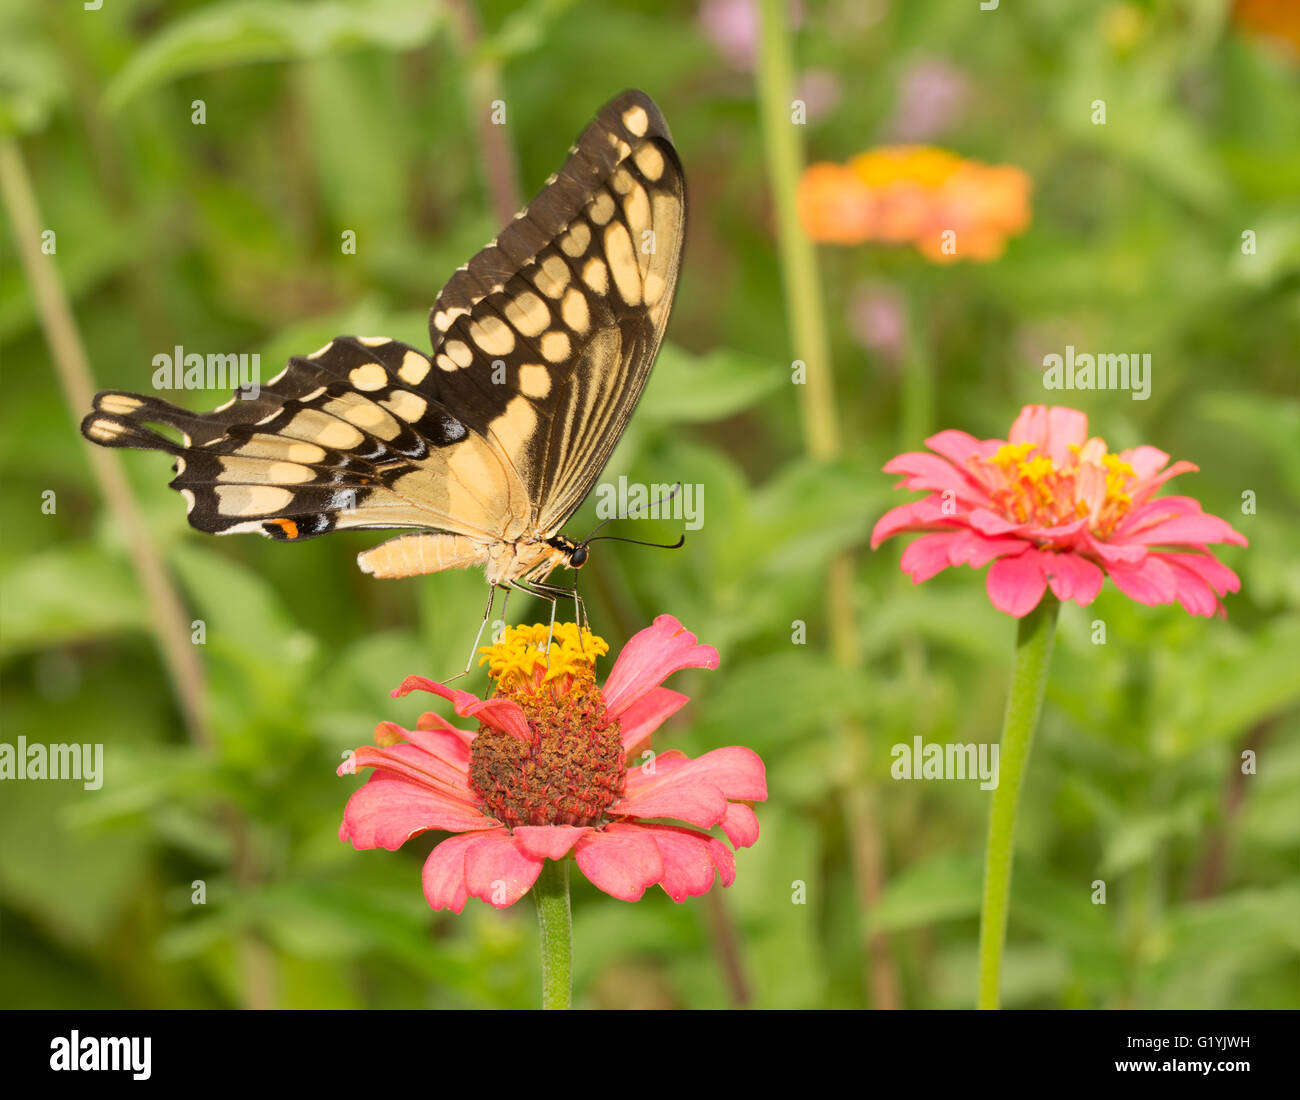 Papilio cresphontes, Giant Swallowtail butterfly, qui se nourrit d'une fleur Zinnia rose Banque D'Images